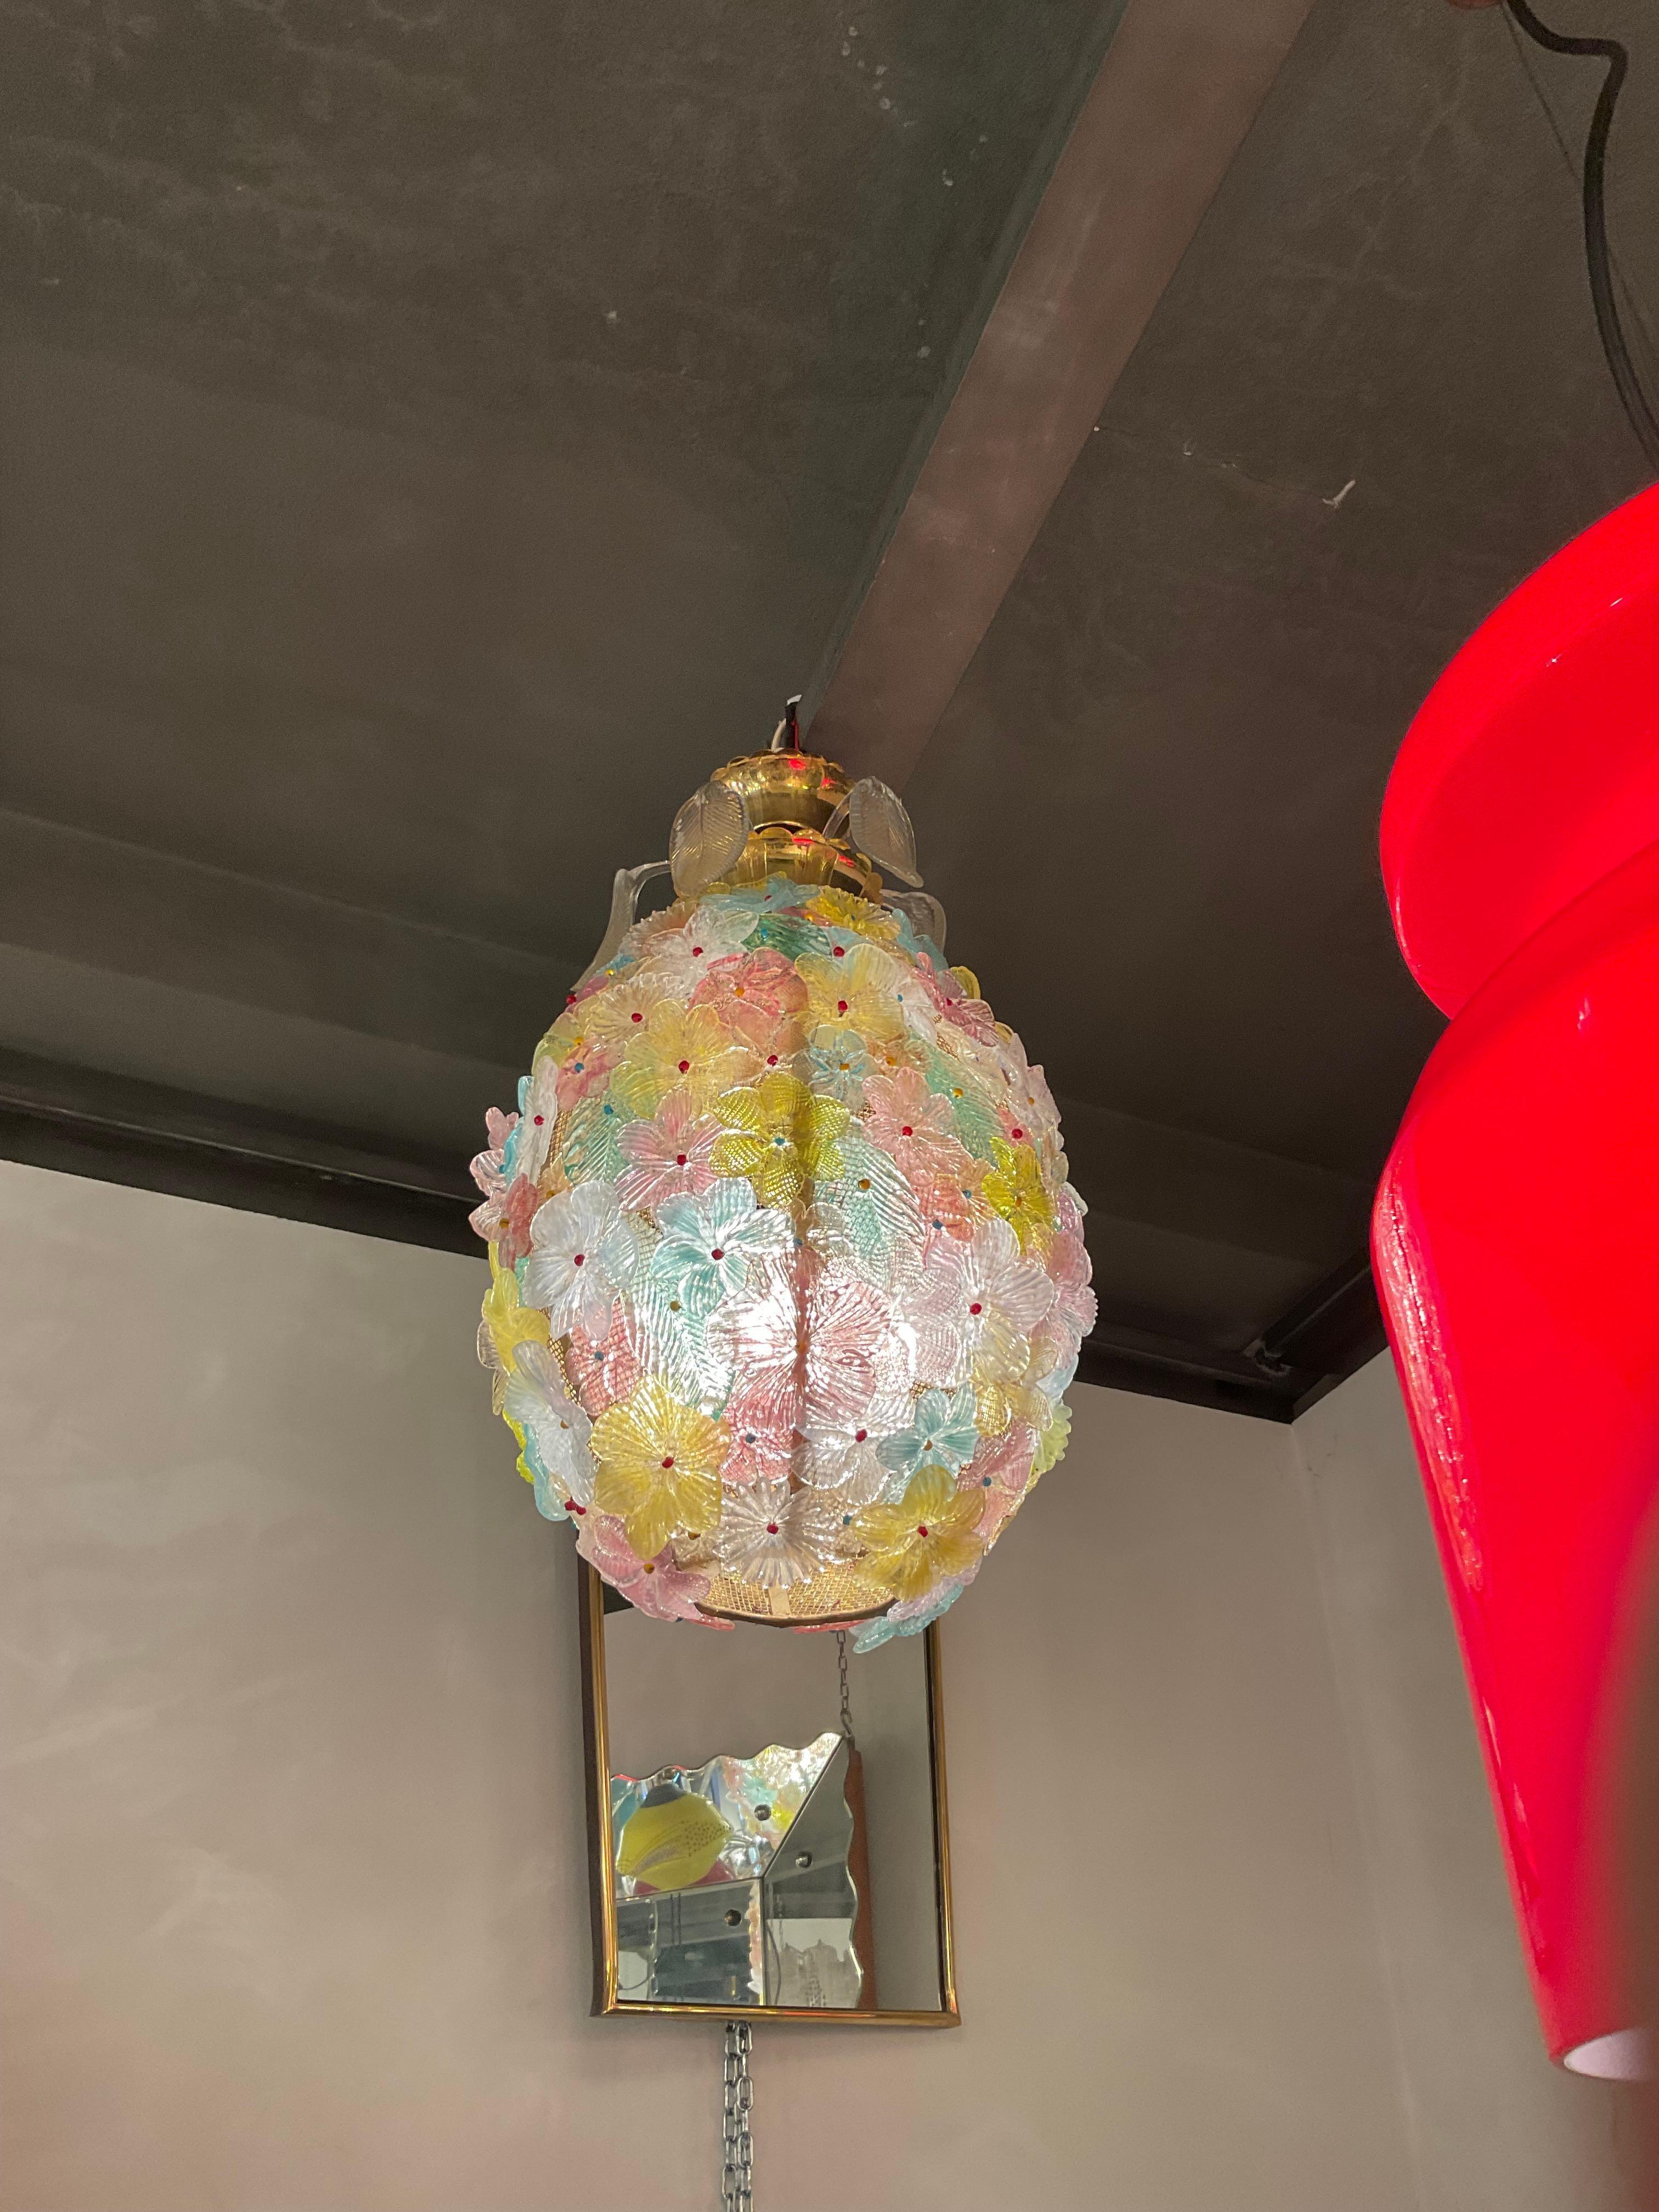 Un lampadario in vetro di murano disegnato negli anni 60 dalla vetreria SEGUSO, a MURANO.
Molto particolare per la sua forma ad ananas con 5 foglie sopra incastonate nella coppetta di ottone, anche loro in vetro di murano con lo spruzzo d’oro al